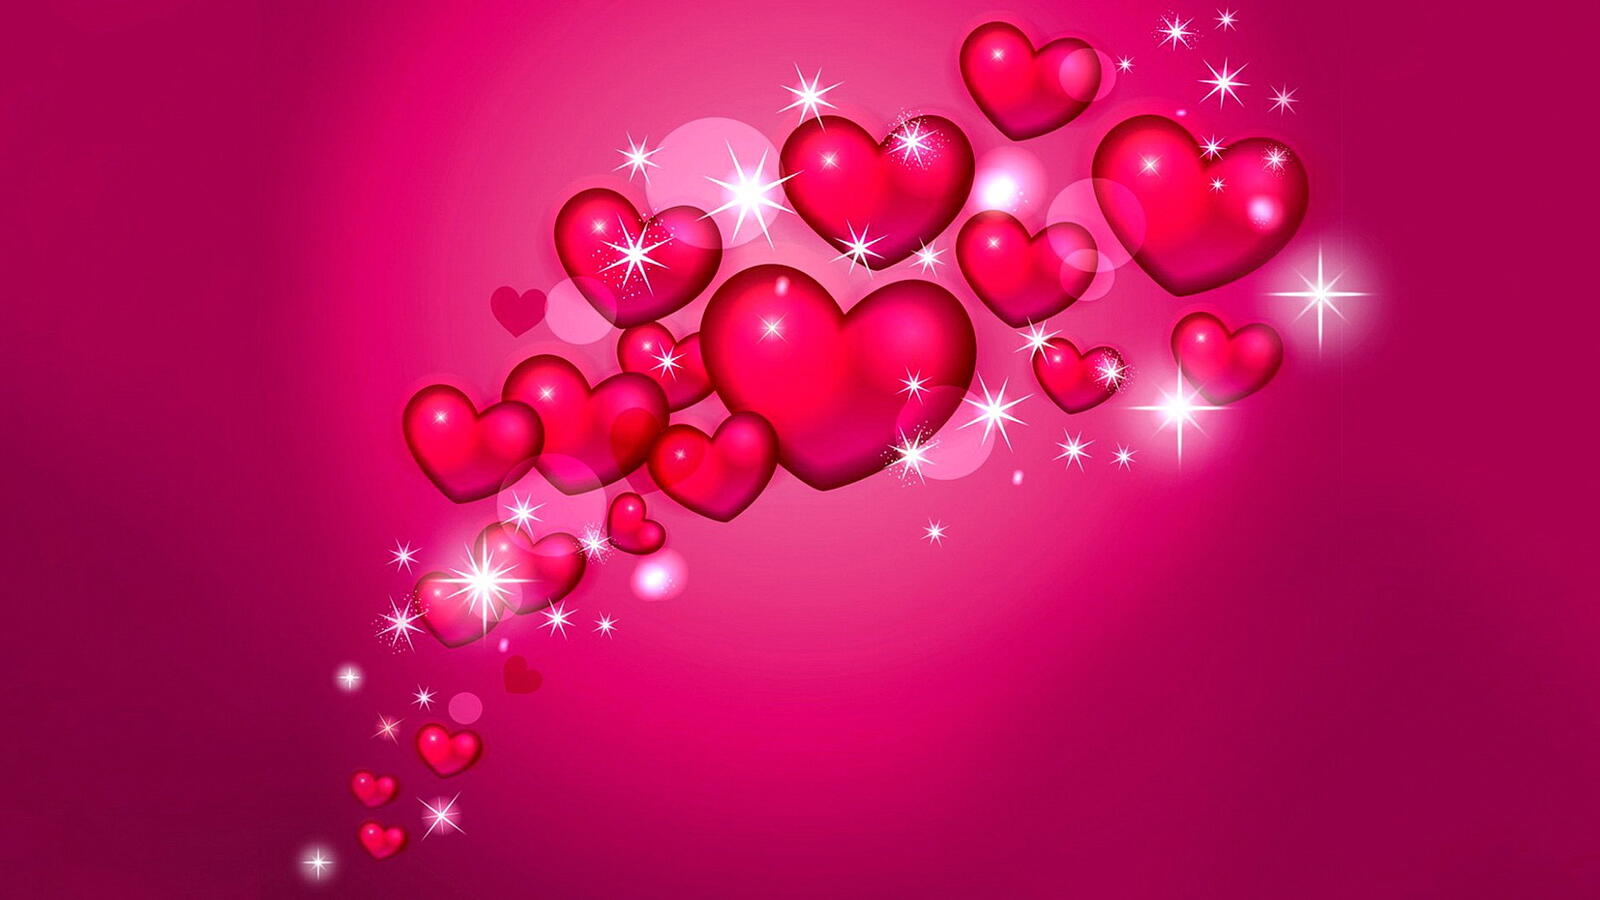 Бесплатное фото Сердечки и блики на розовом фоне